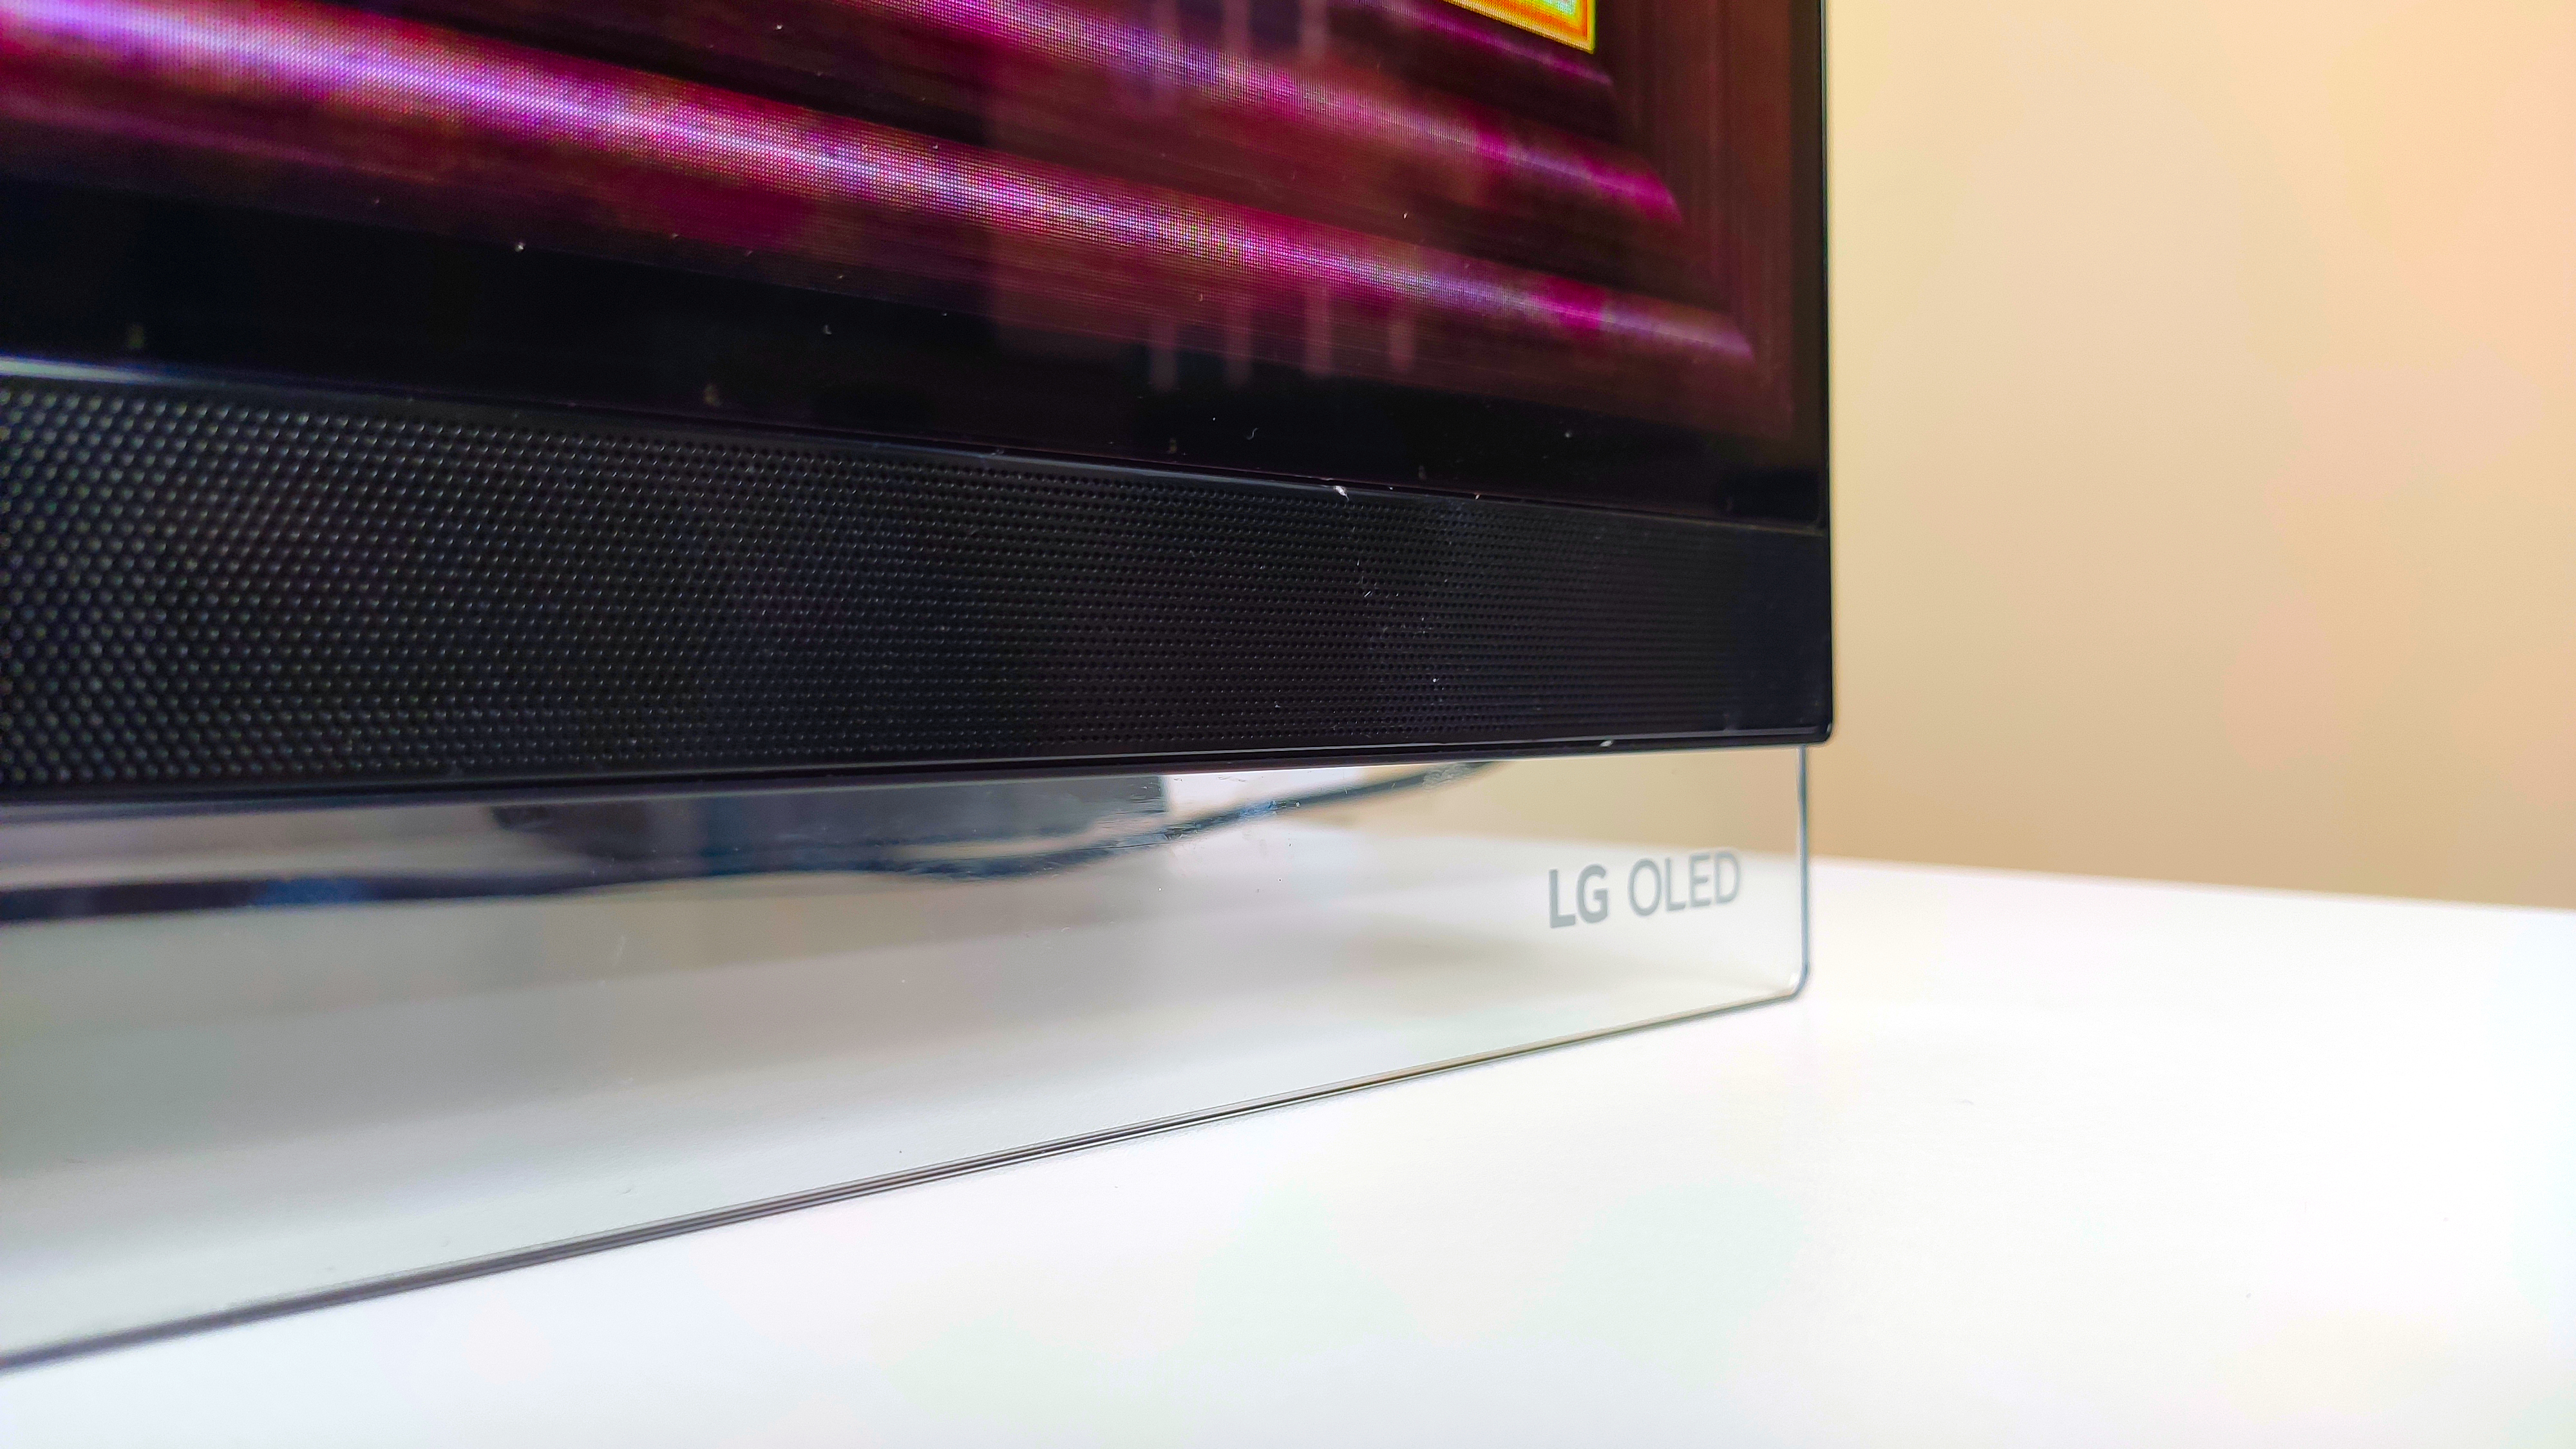 كان E9 OLED أحد أفضل أجهزة التلفاز من إل جي - إذن أين ذهب؟ 1